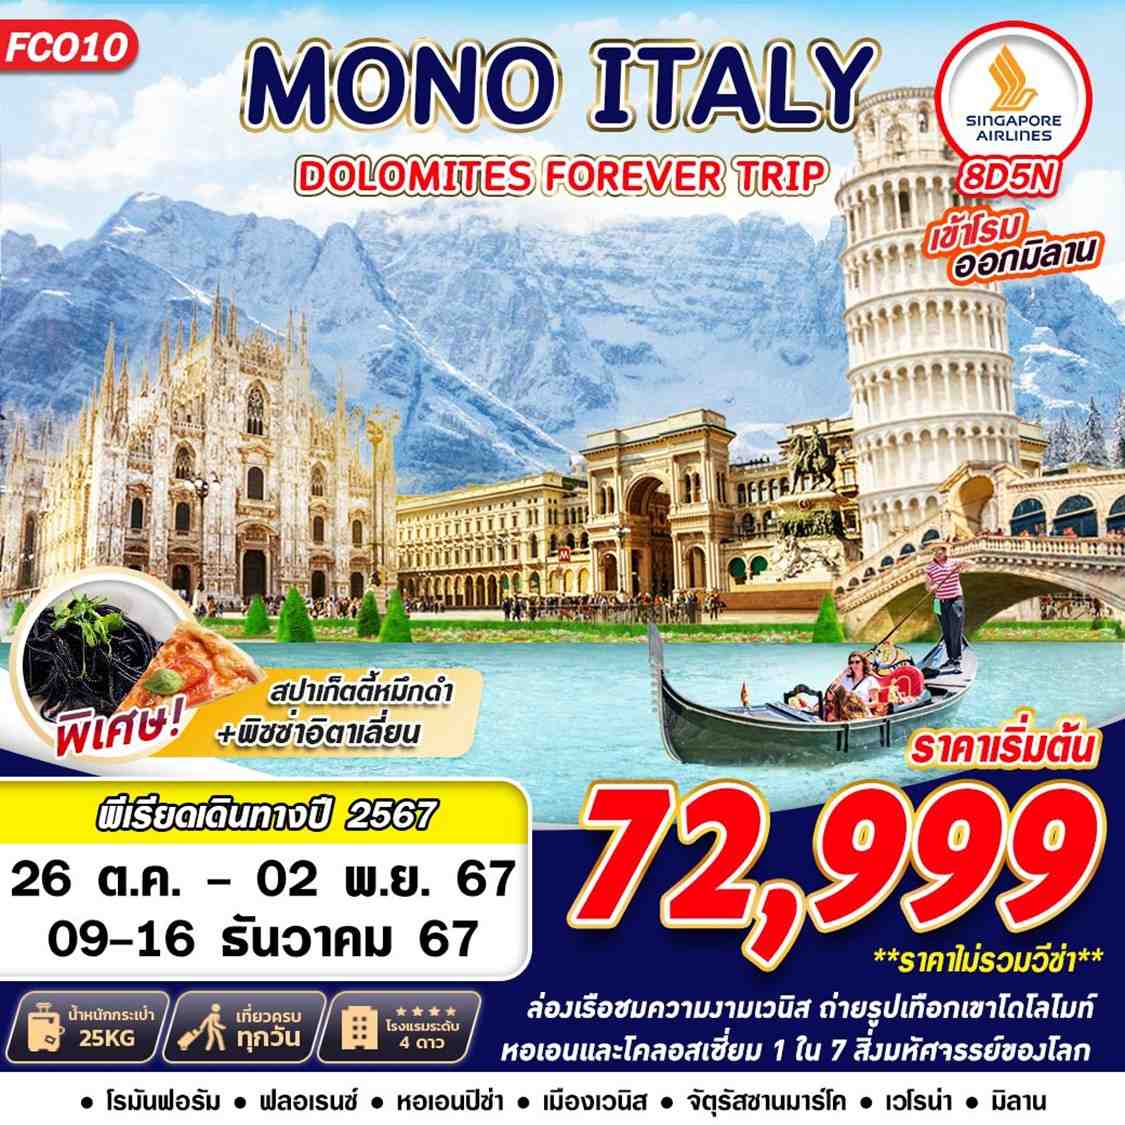 ทัวร์ยุโรป MONO ITALY DOLOMITES FOREVER 8วัน 5คืน SQ